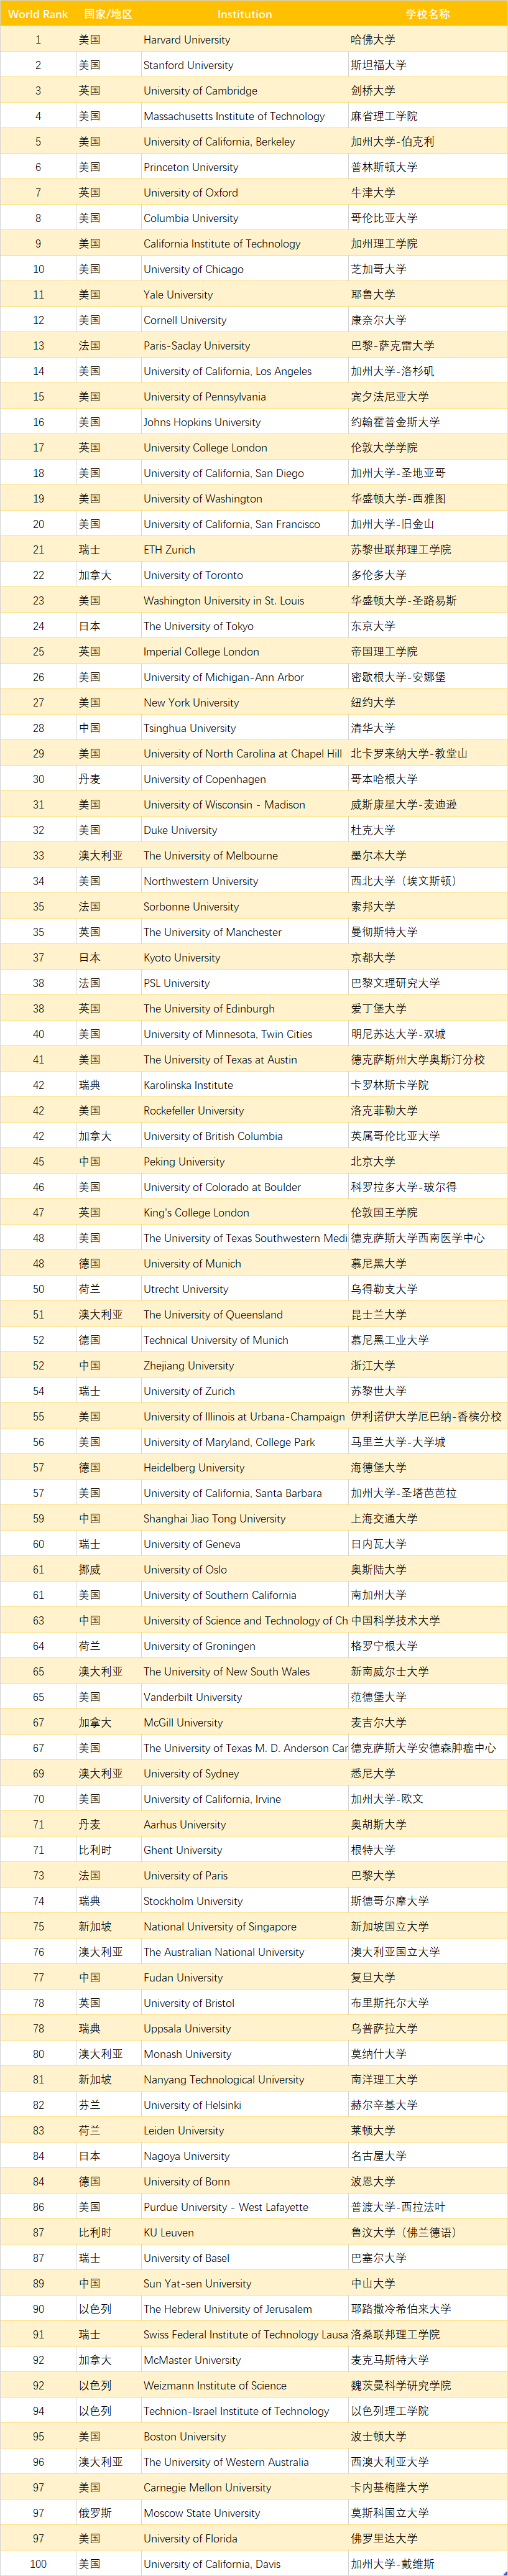 2021软科世界大学学术排名发布